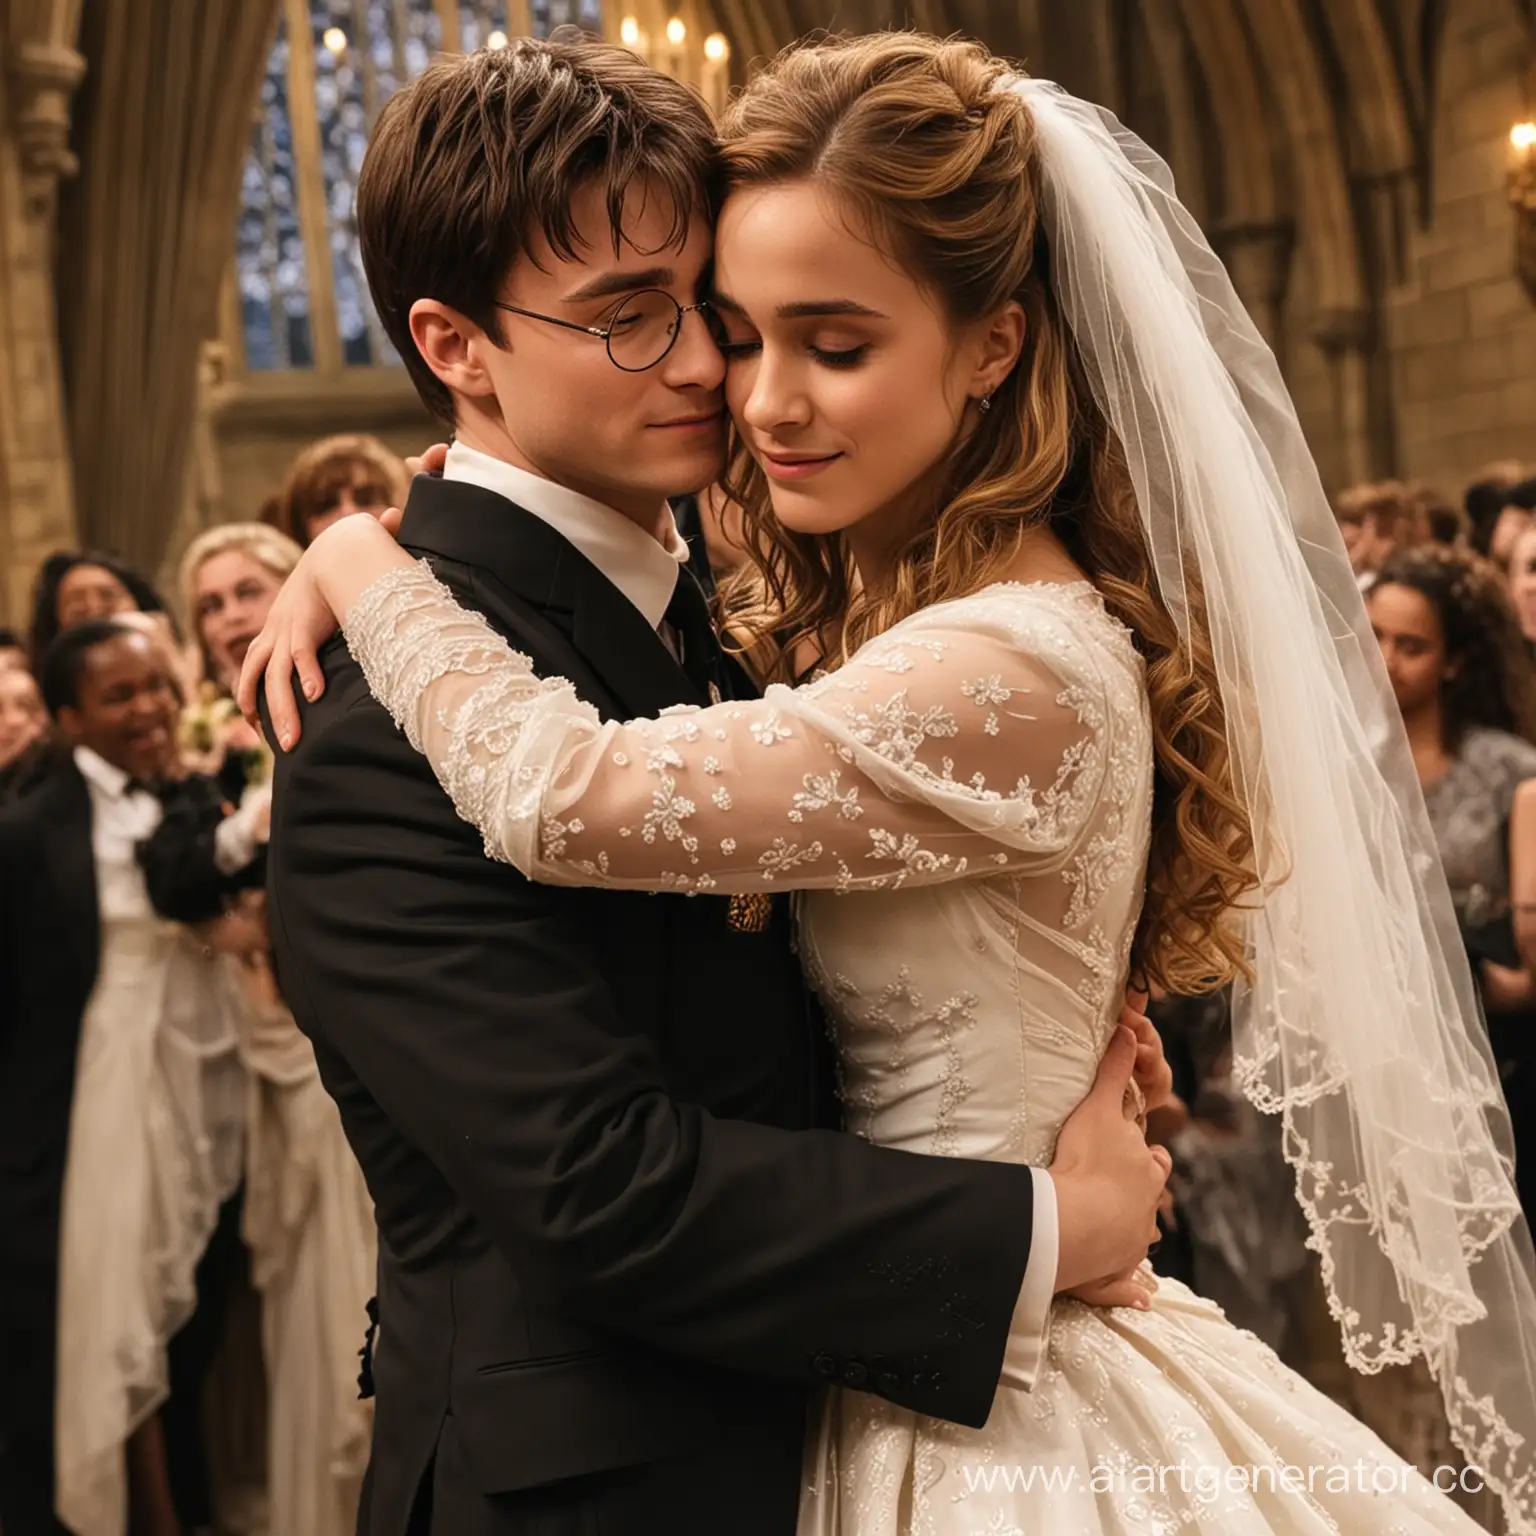 Гарри Поттер в чёрном костюме жениха обнимает Гермиону Грейнджер которая одета в свадебное пышное платье